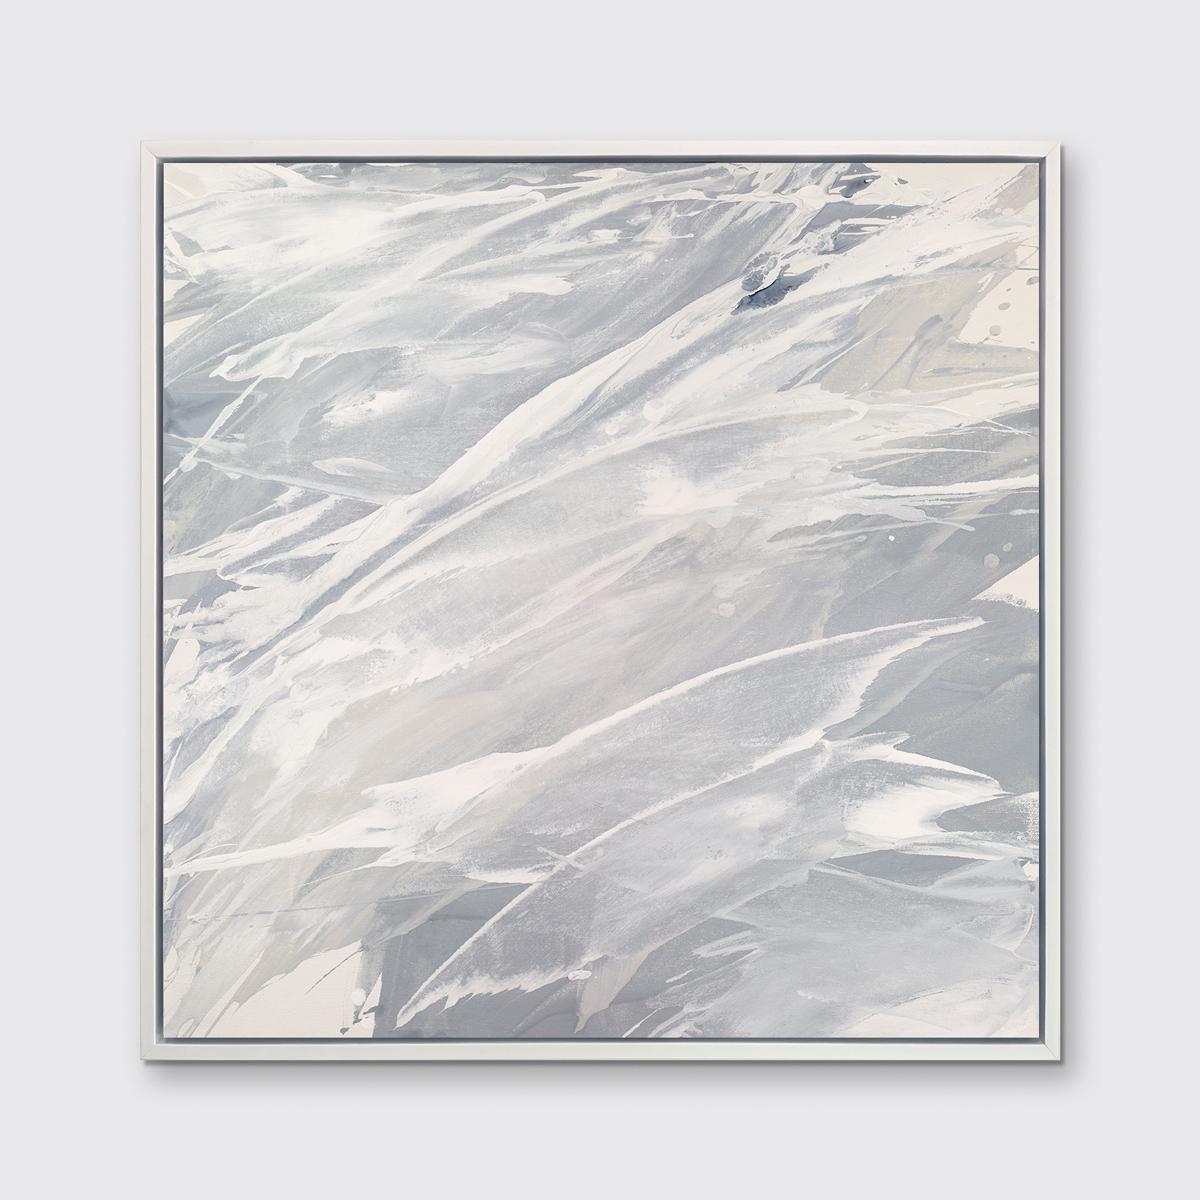 Dieser zeitgenössische Druck in limitierter Auflage von Teodora Guererra zeichnet sich durch eine warme Grau- und Weißpalette mit Schichten neutraler Farben aus, die fast über die Komposition spritzen. Dieser Druck passt hervorragend zu den